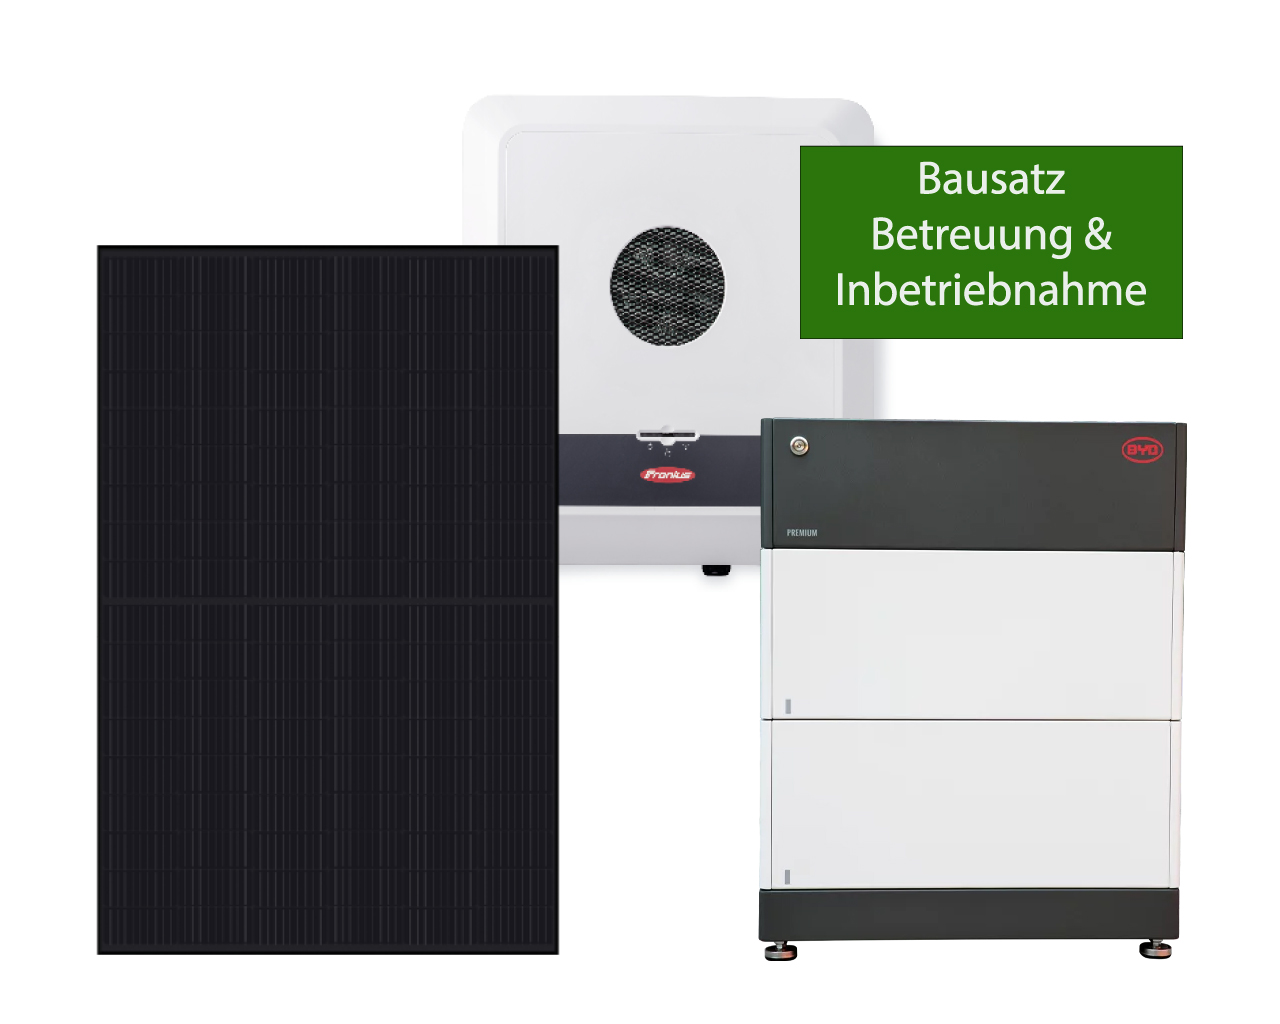 Fronius Gen24 - Solarpaket Sonne - Bis 8000 kWh Jahresverbrauch - Bausatz